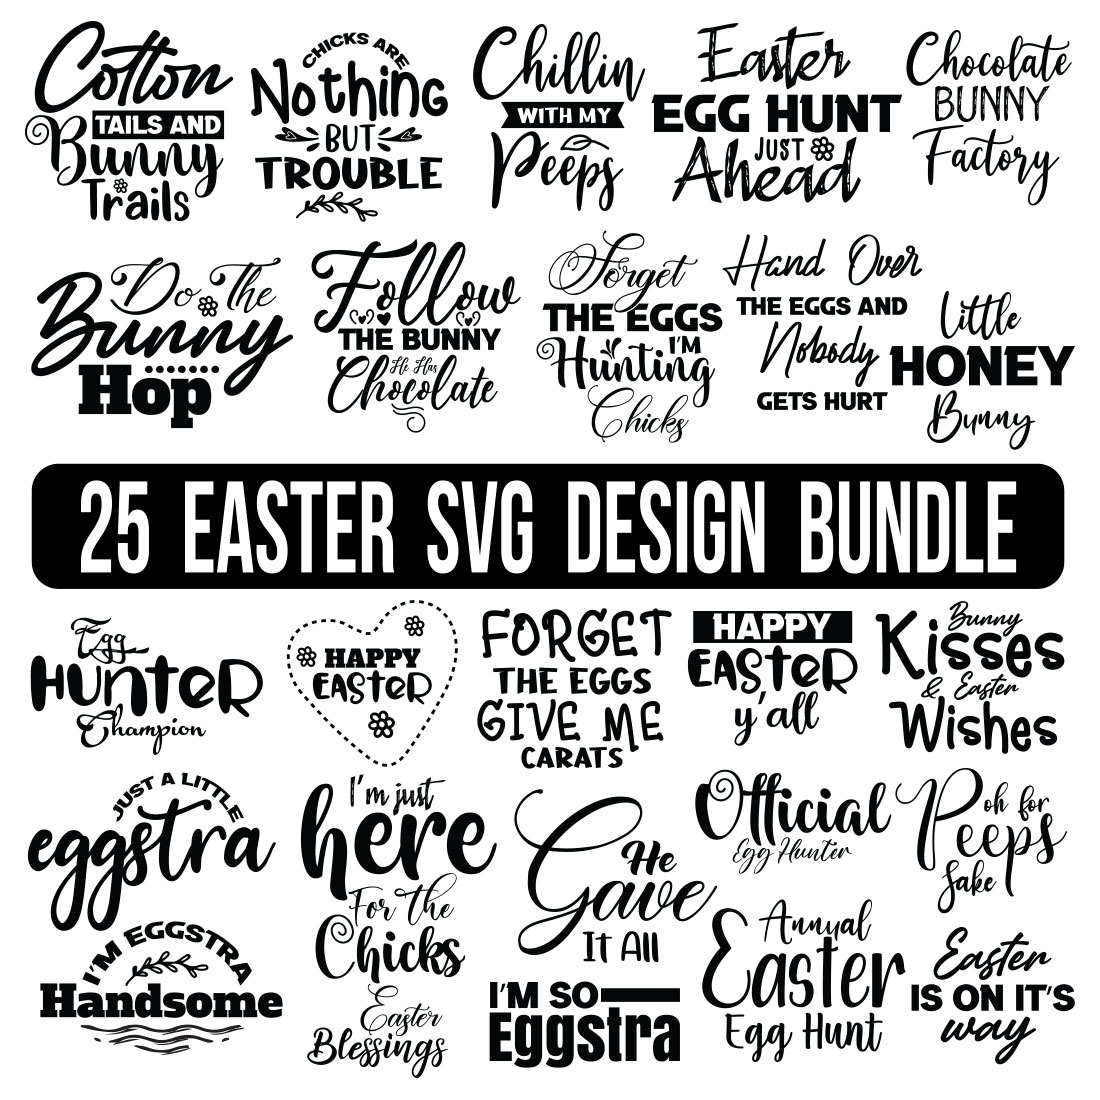 Happy Easter SVG Bundle, Easter SVG, Digital Files, Easter quotes, Easter Bunny svg, Easter Egg svg, Easter png, Spring svg,Farmhouse Easter Svg Bundle, Rustic Easter Svg, cover image.